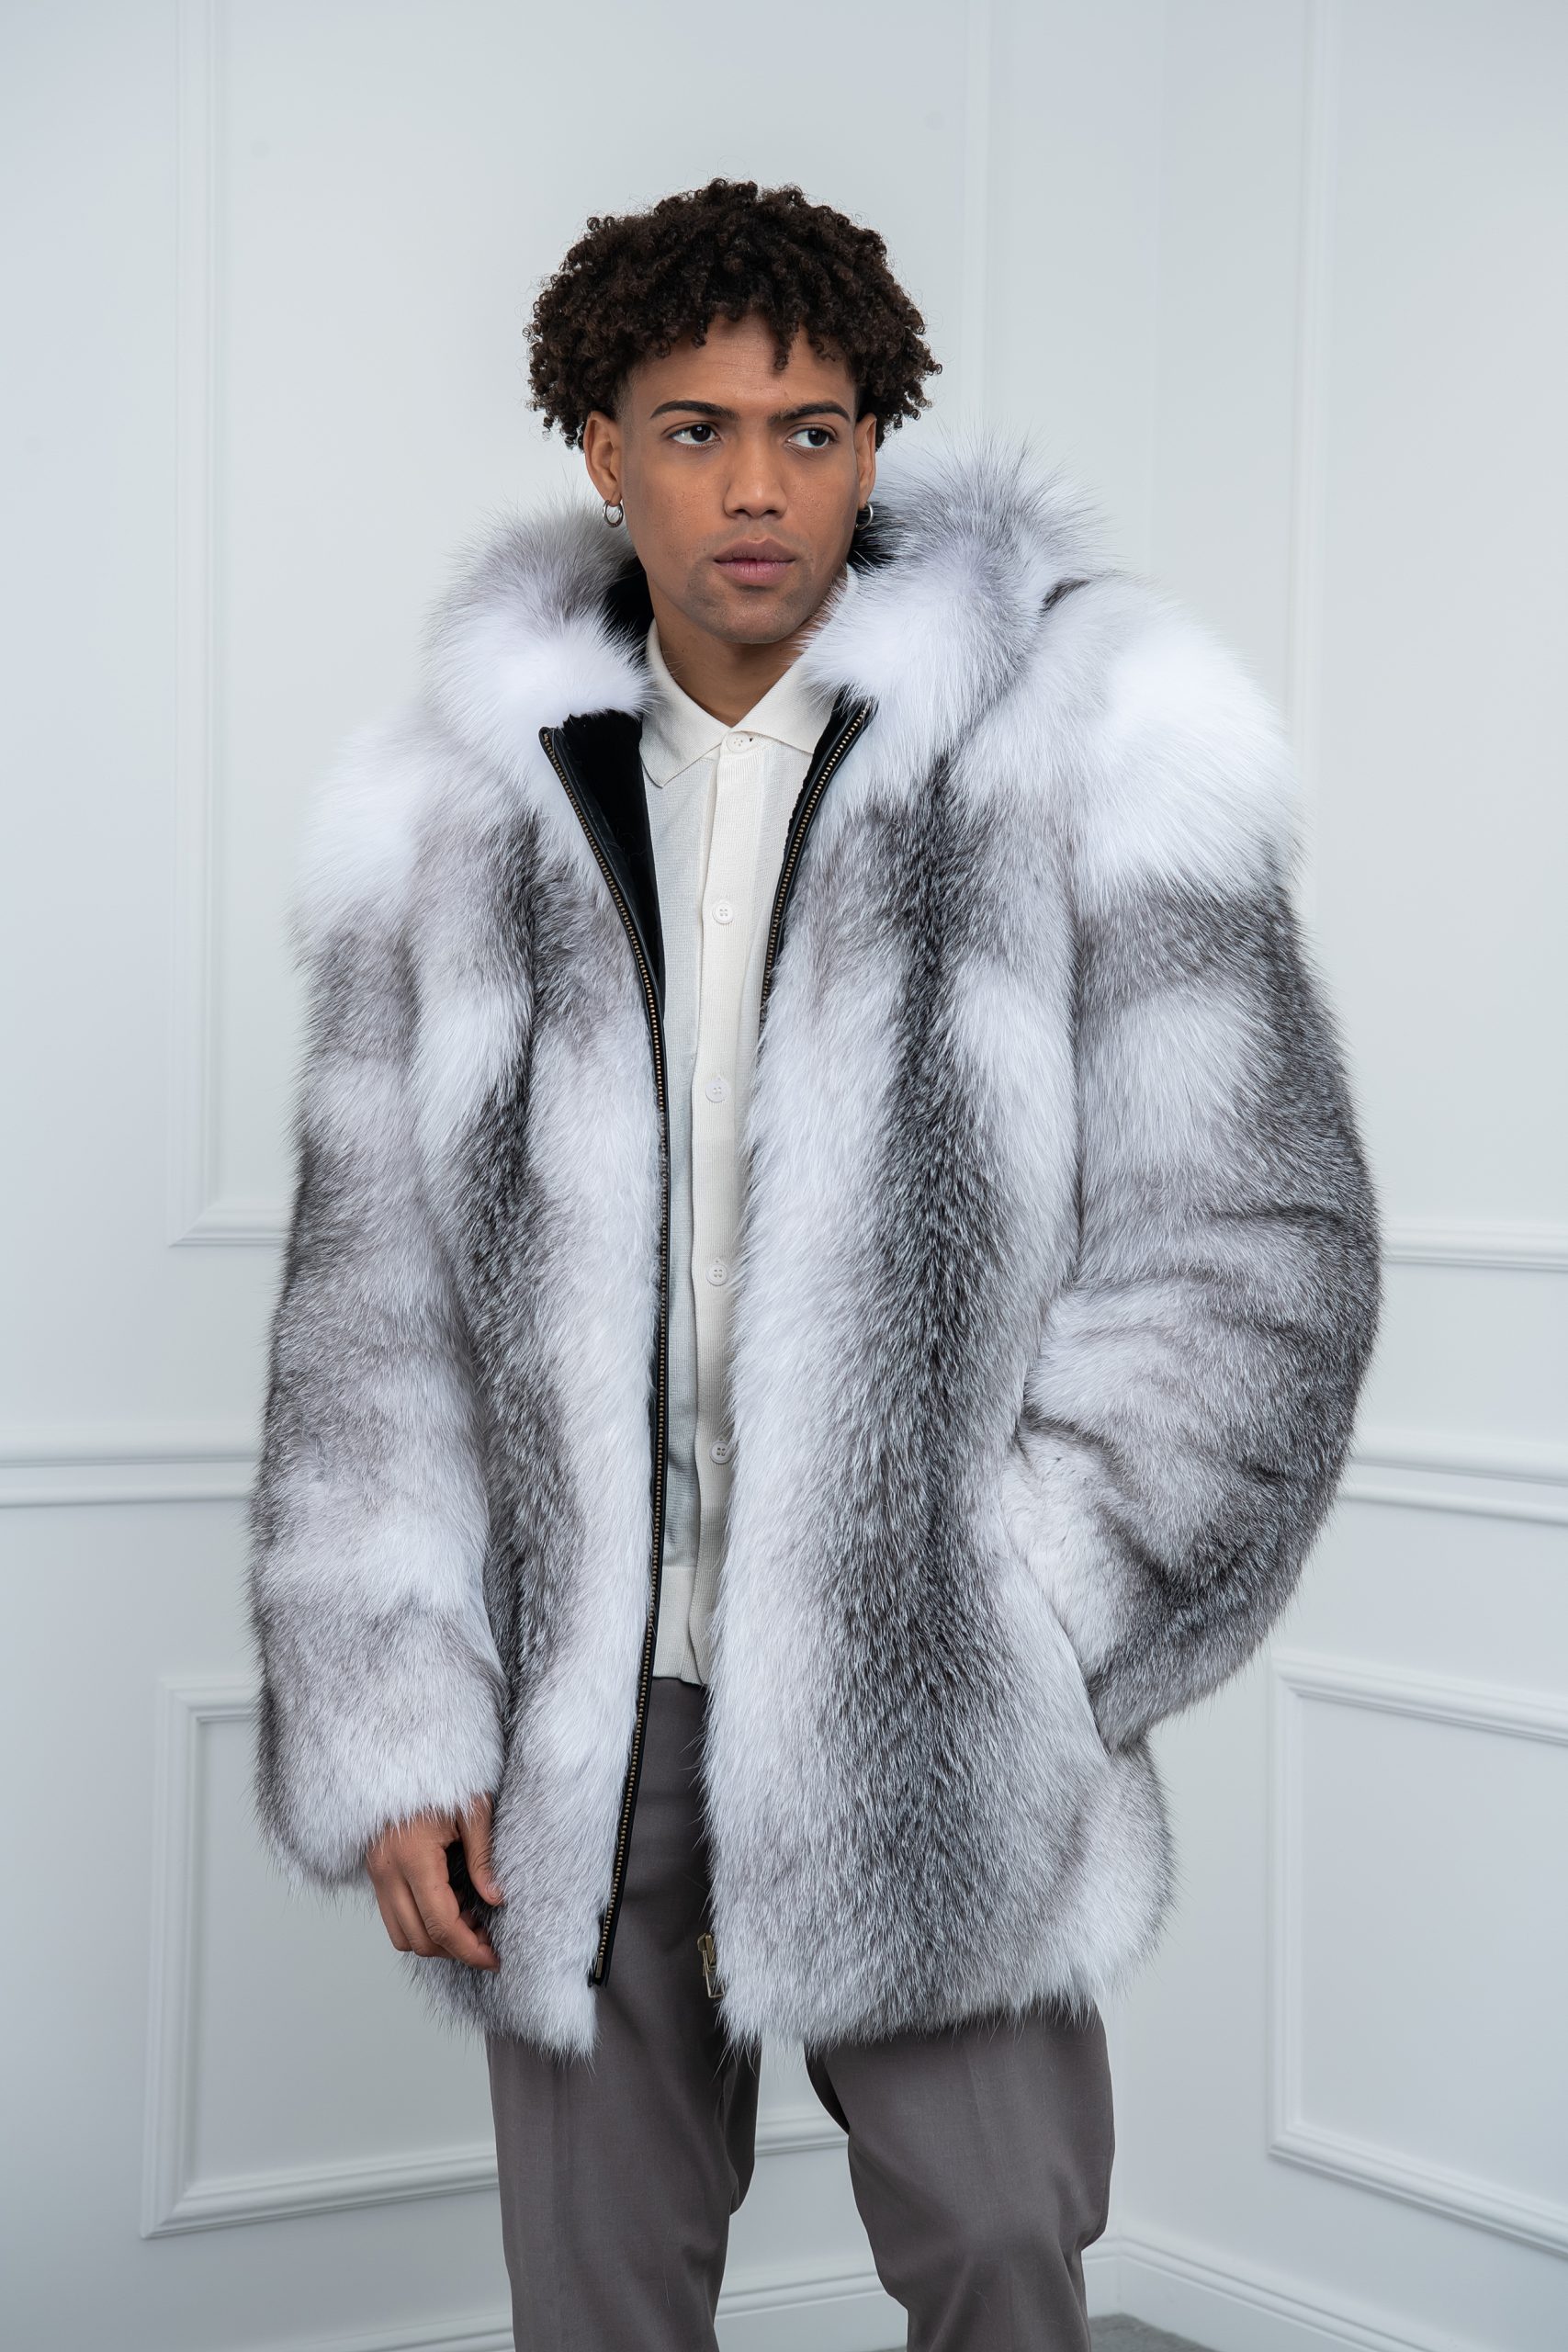 Real natural arctic fox fur for men